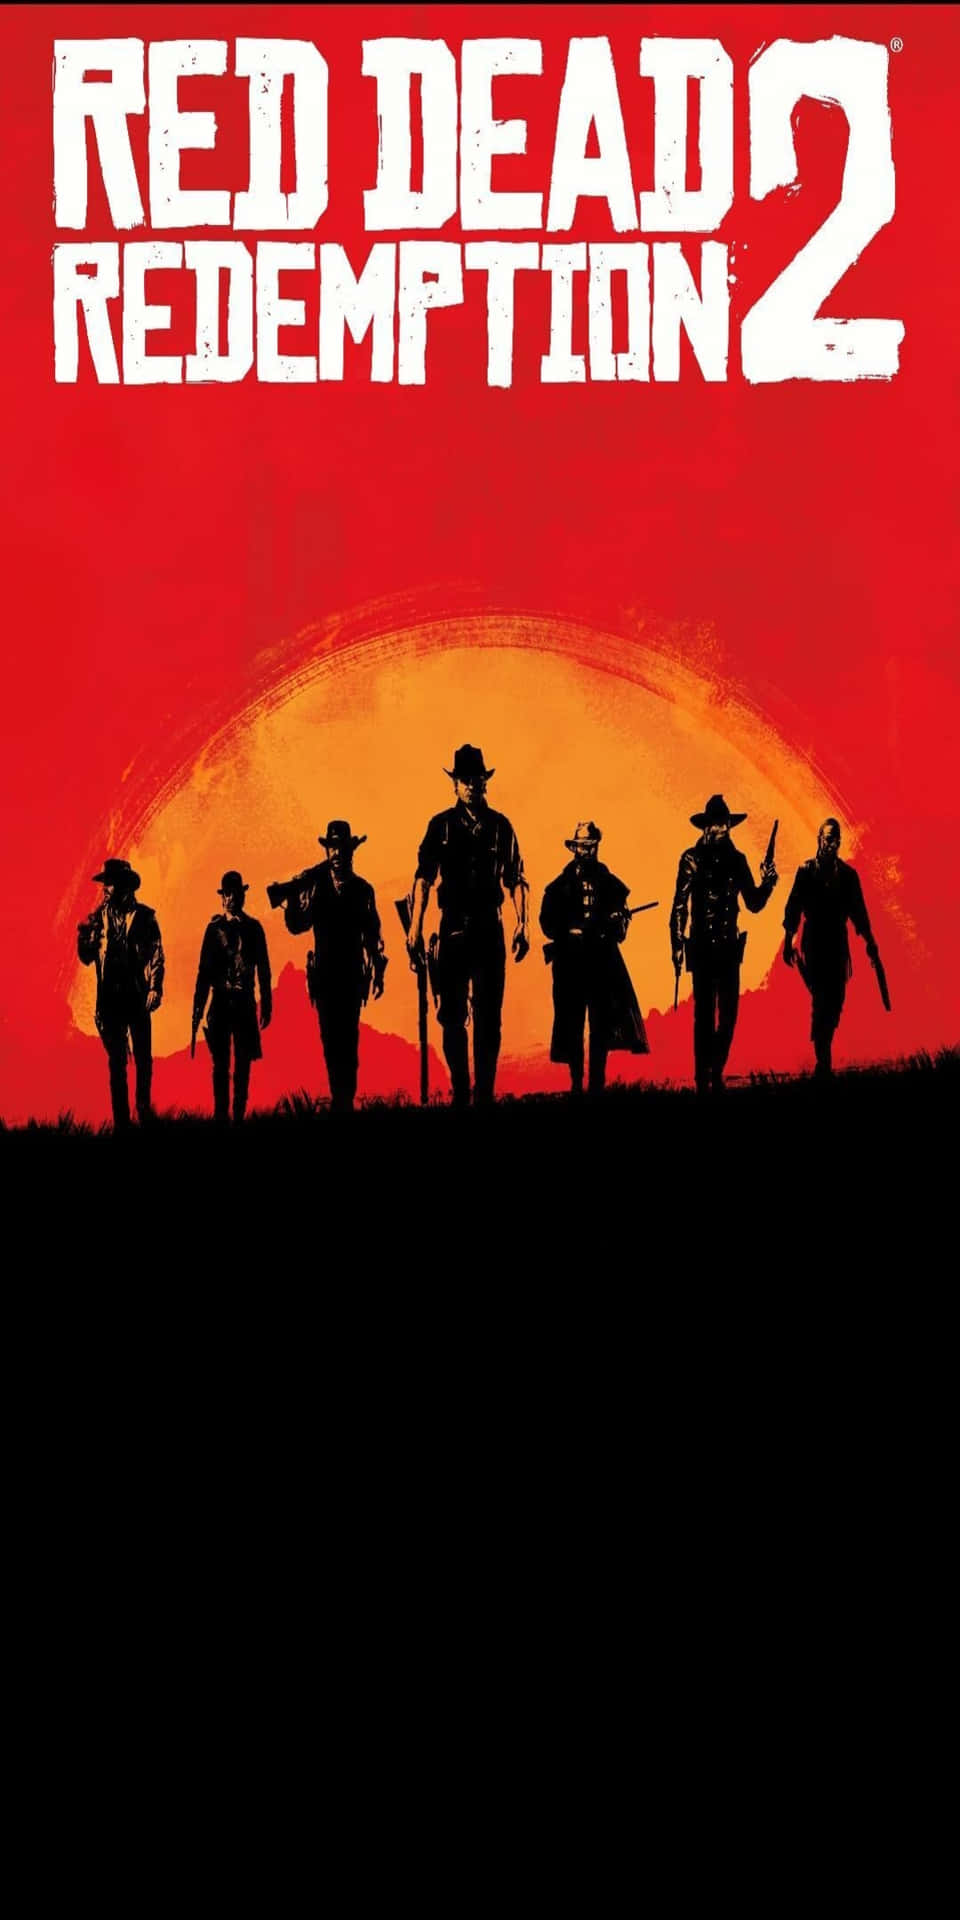 Pixel3 Bakgrundsbild Med En Röd Dead Redemption 2 Poster Med Silhuetter Av Cowboys.